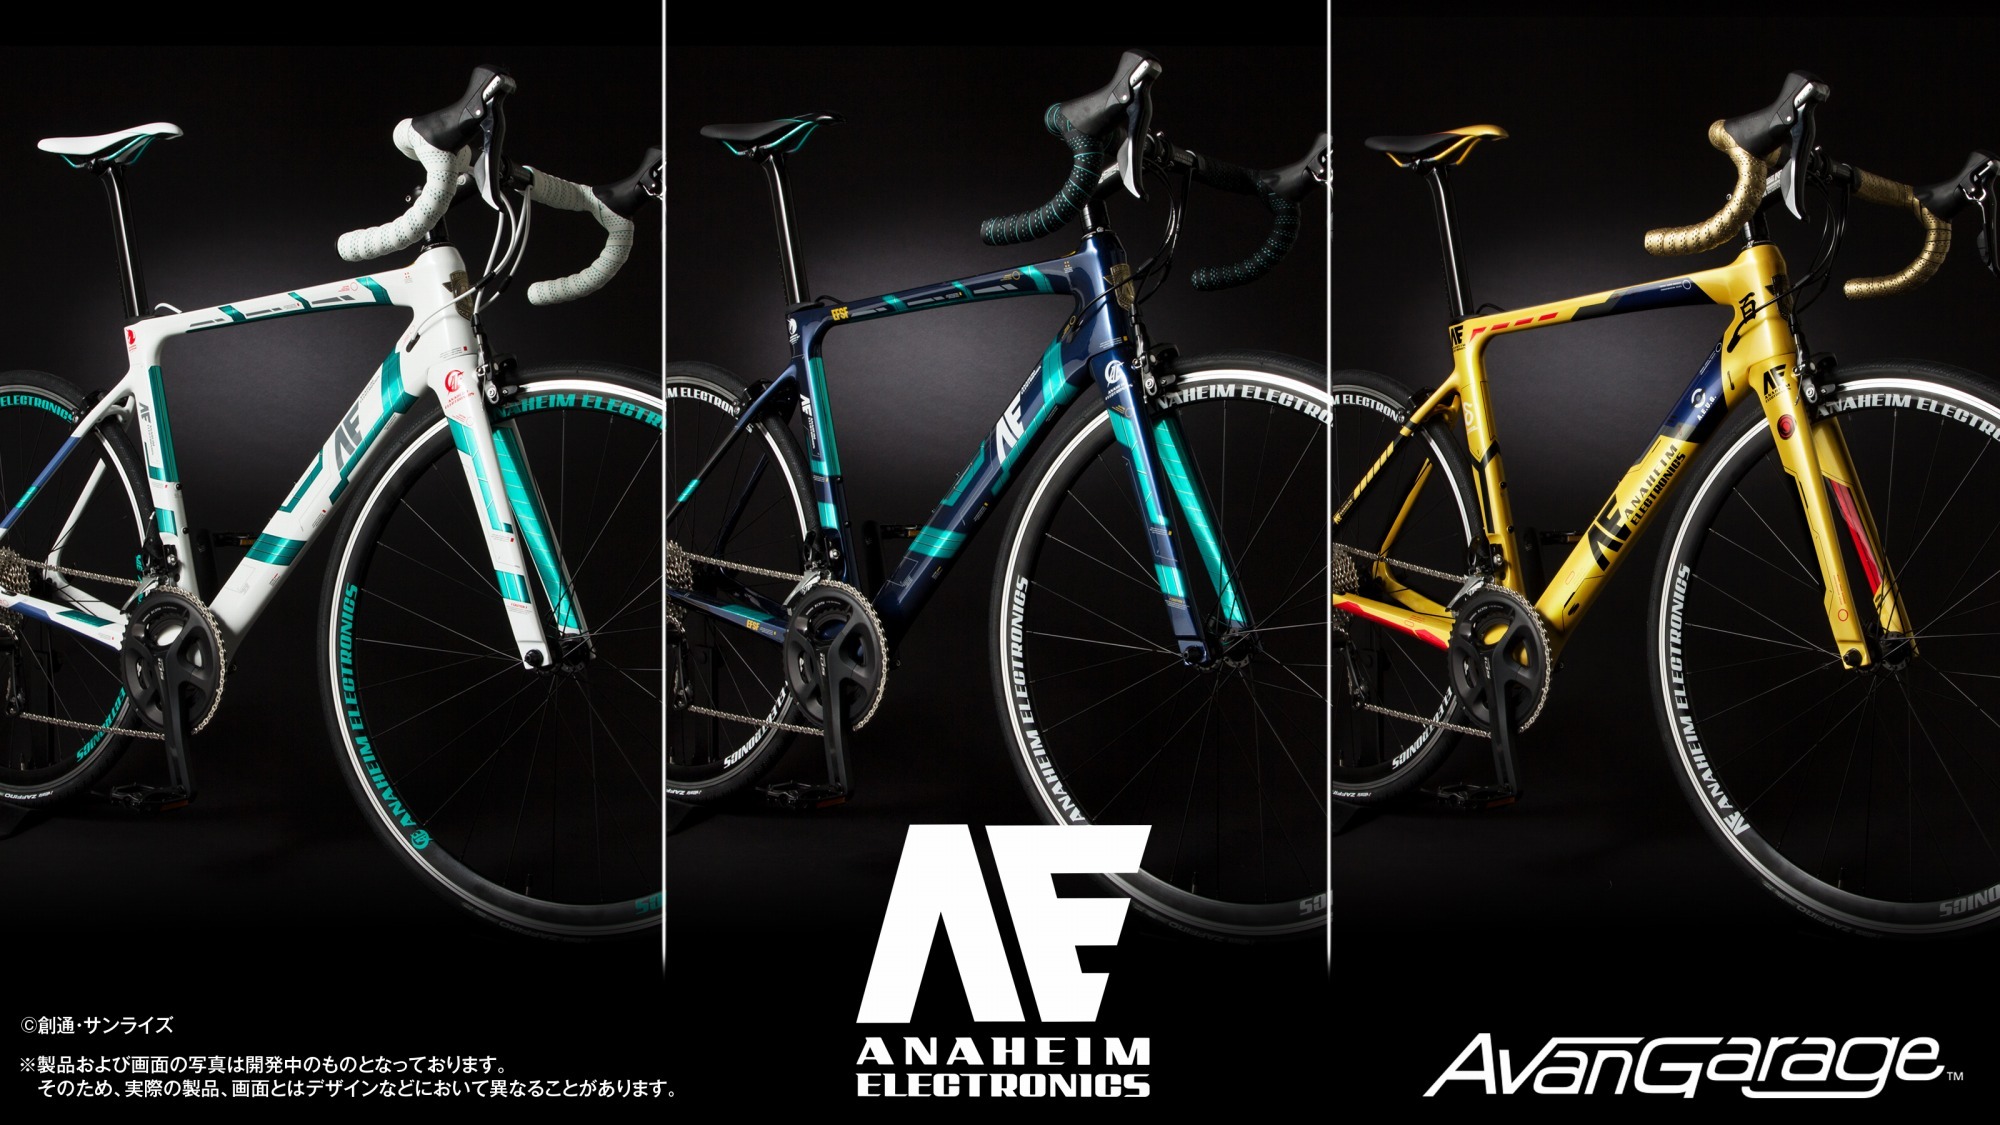 激レア νガンダム AE-RX-93 アナハイム・エレクトロニクス 自転車 - 自転車